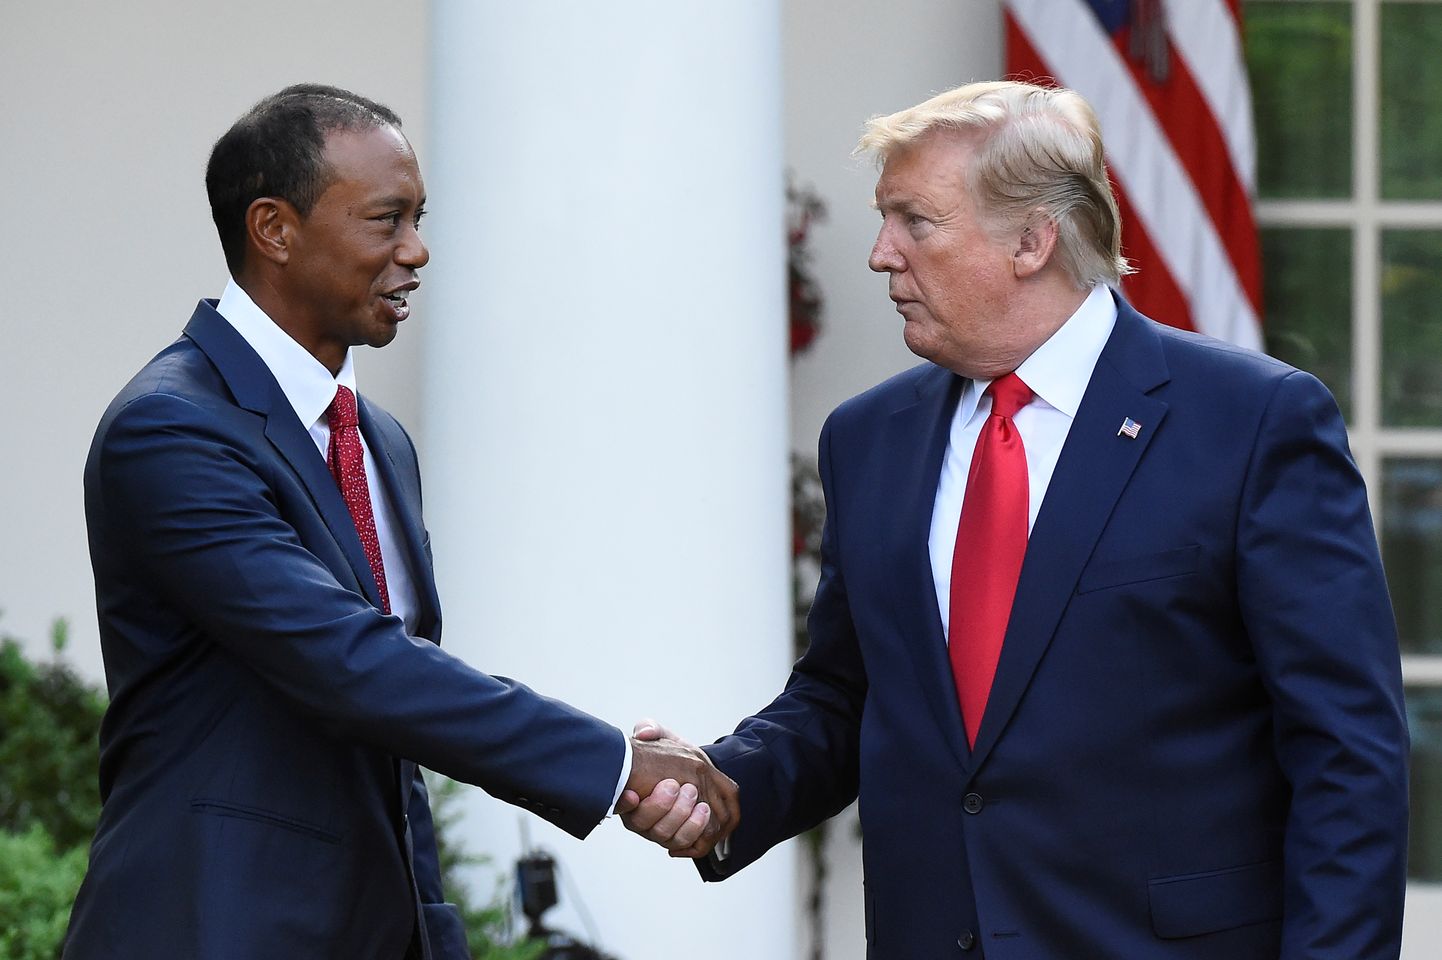 Golfitäht Tiger Woods oli esimene tegevsportlane, kes pälvis USA presidendi vabaduse medali. Selle ulatas talle 2019. aastal president Donald Trump.